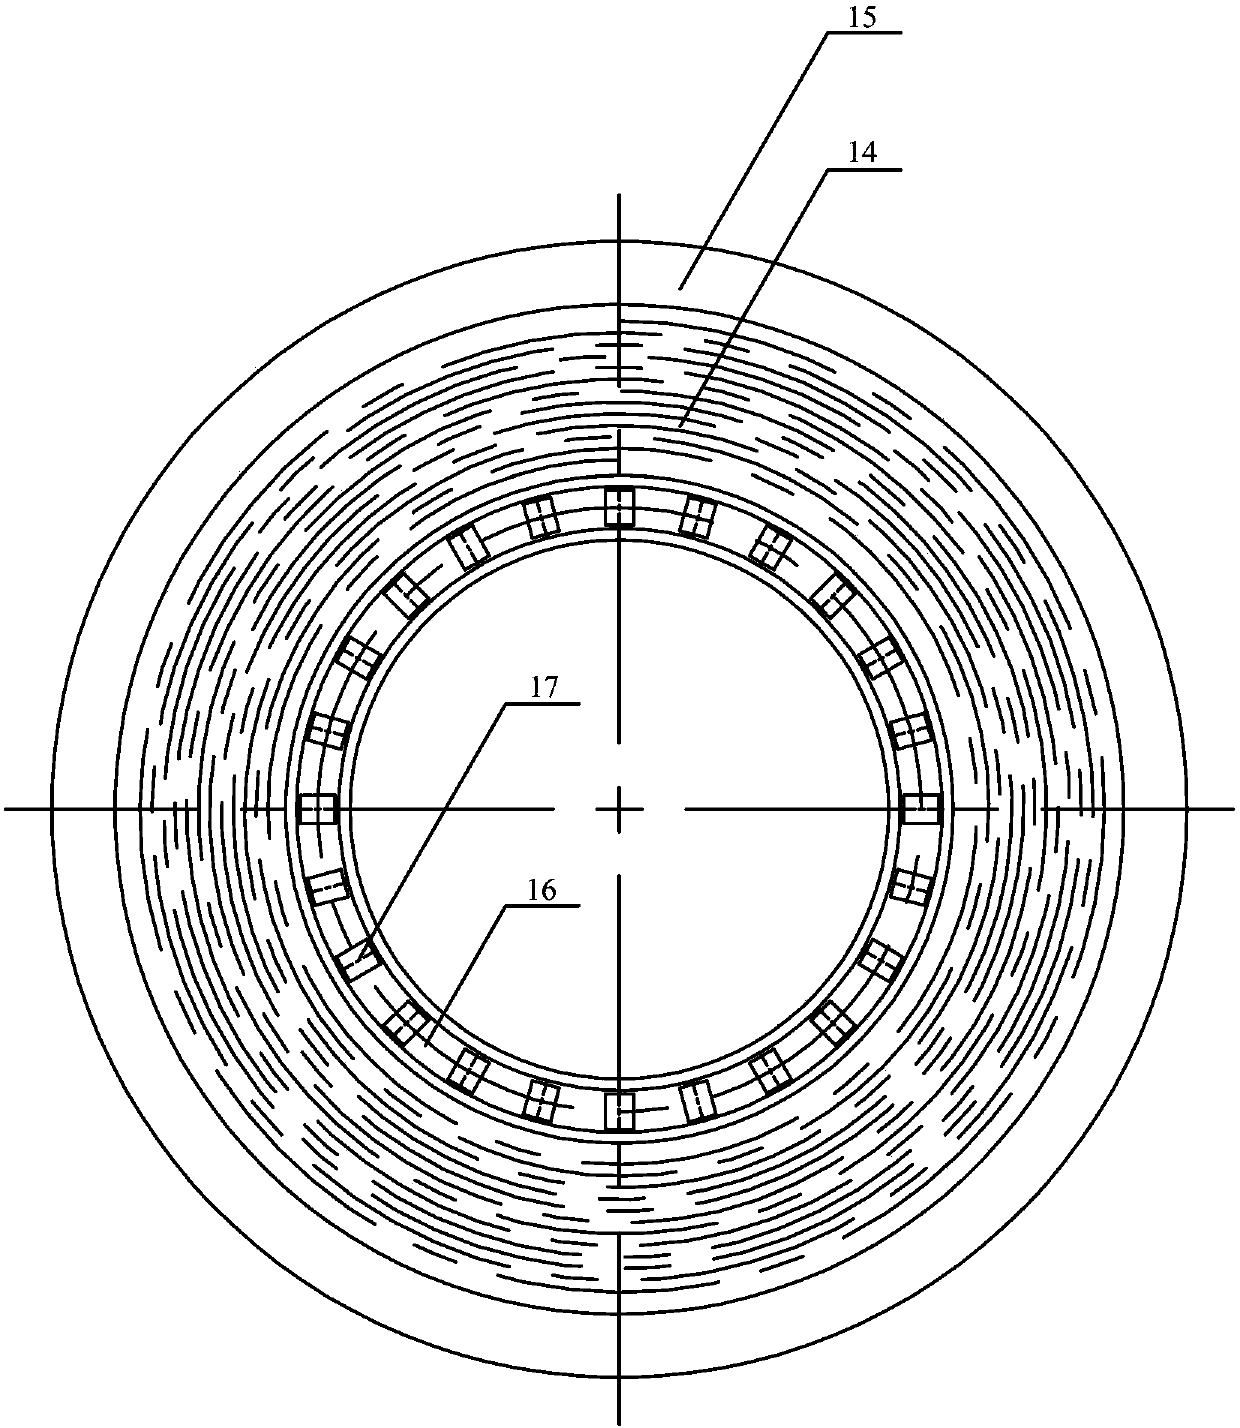 Shaft displacement fault self-healing adjusting device for centrifugal compressor